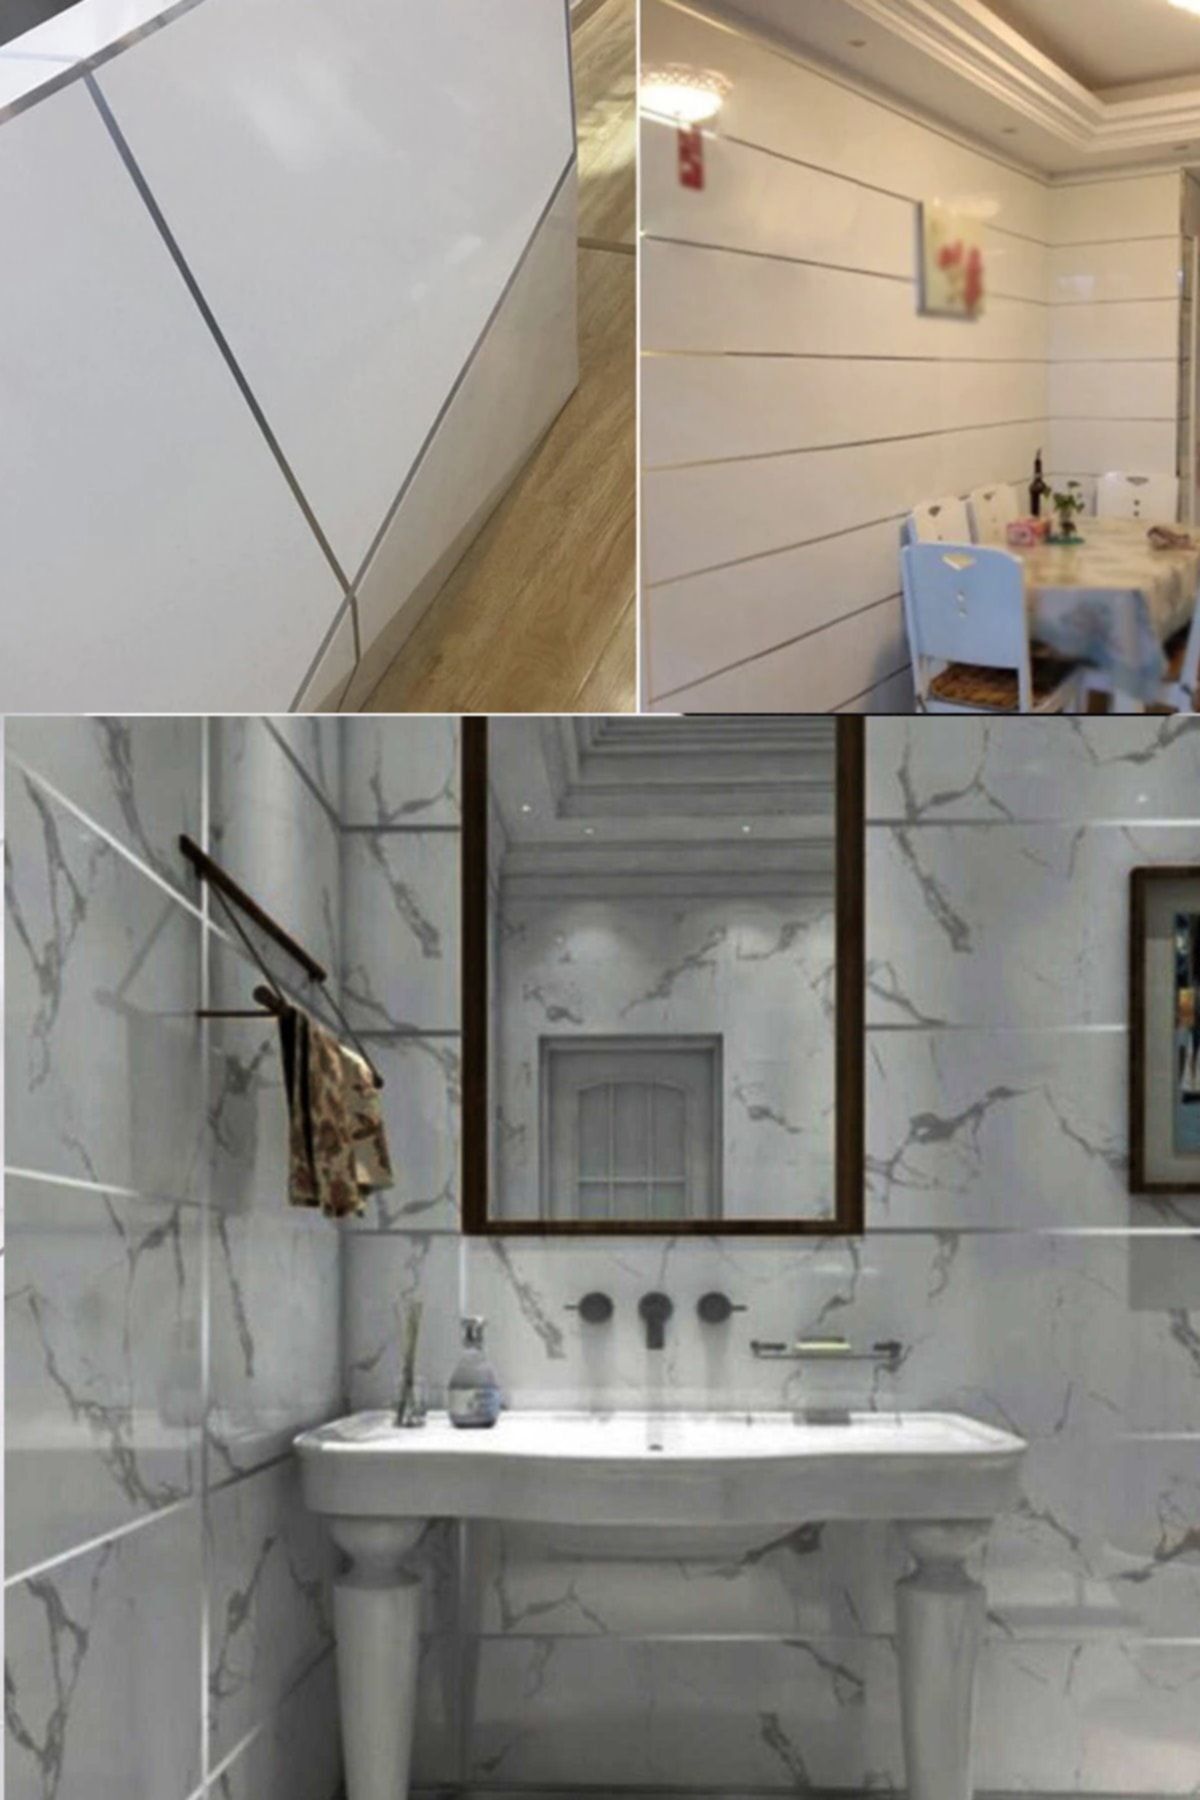 Utelips 1 Cm Tuvalet Mutfak Banyo Fayans Mermer Arası Şerit Bant Gümüş Banyo Mutfak Için Şık Tasarım 50 Mt